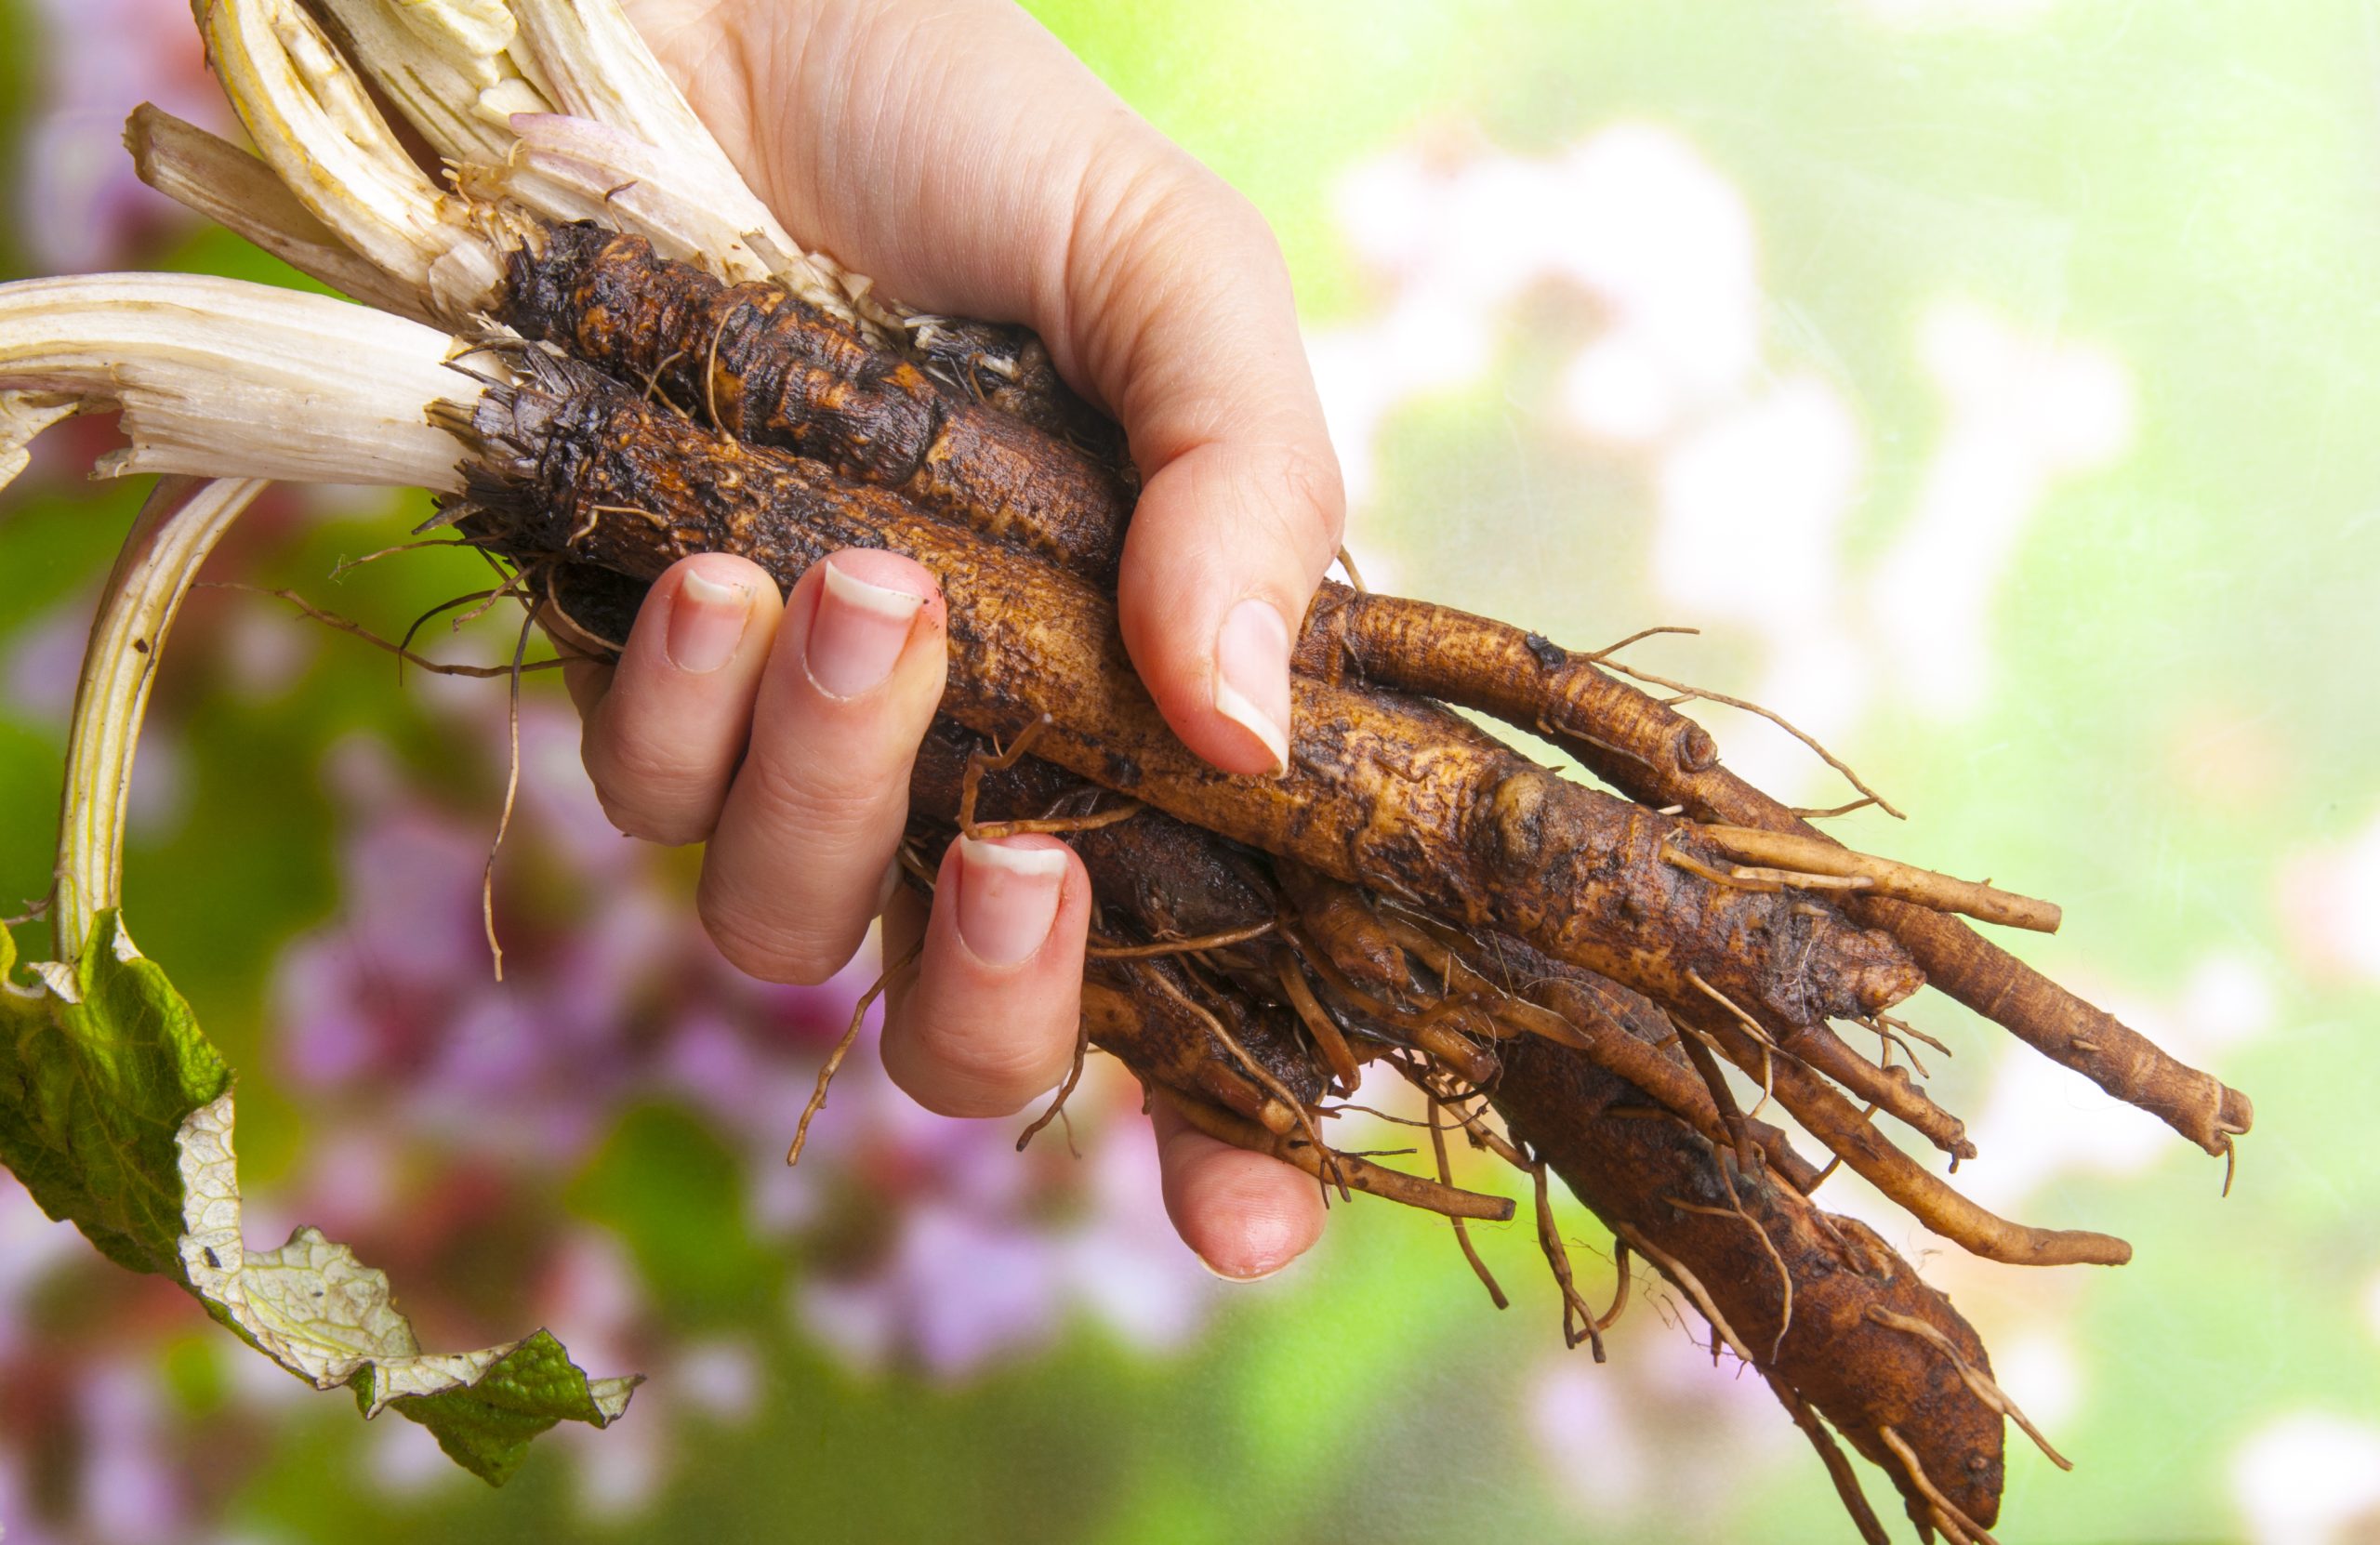 Burdock root, burdock root benefits, benefits of burdock root, burdock root tea, burdock root tea benefits, burdock root oil, burdock root issues, what is burdock root good for